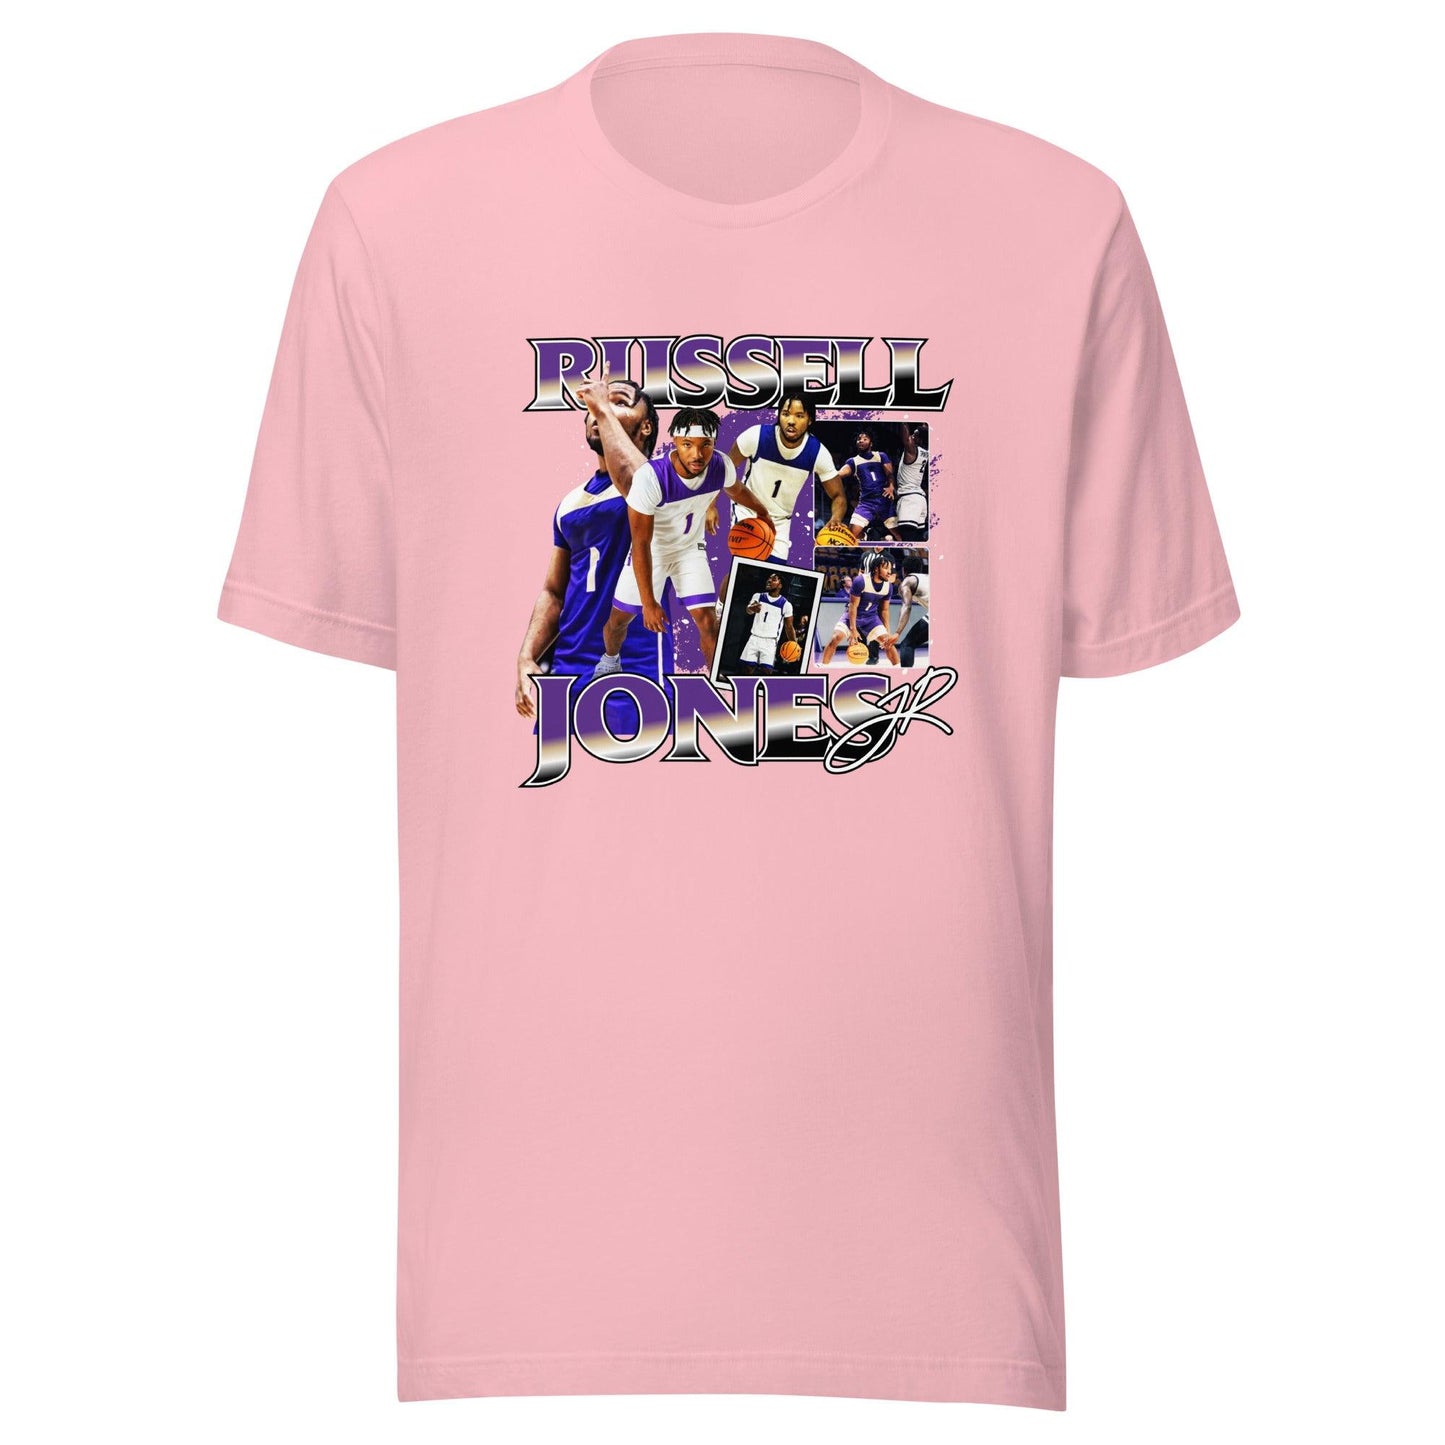 Russell Jones "Vintage" t-shirt - Fan Arch